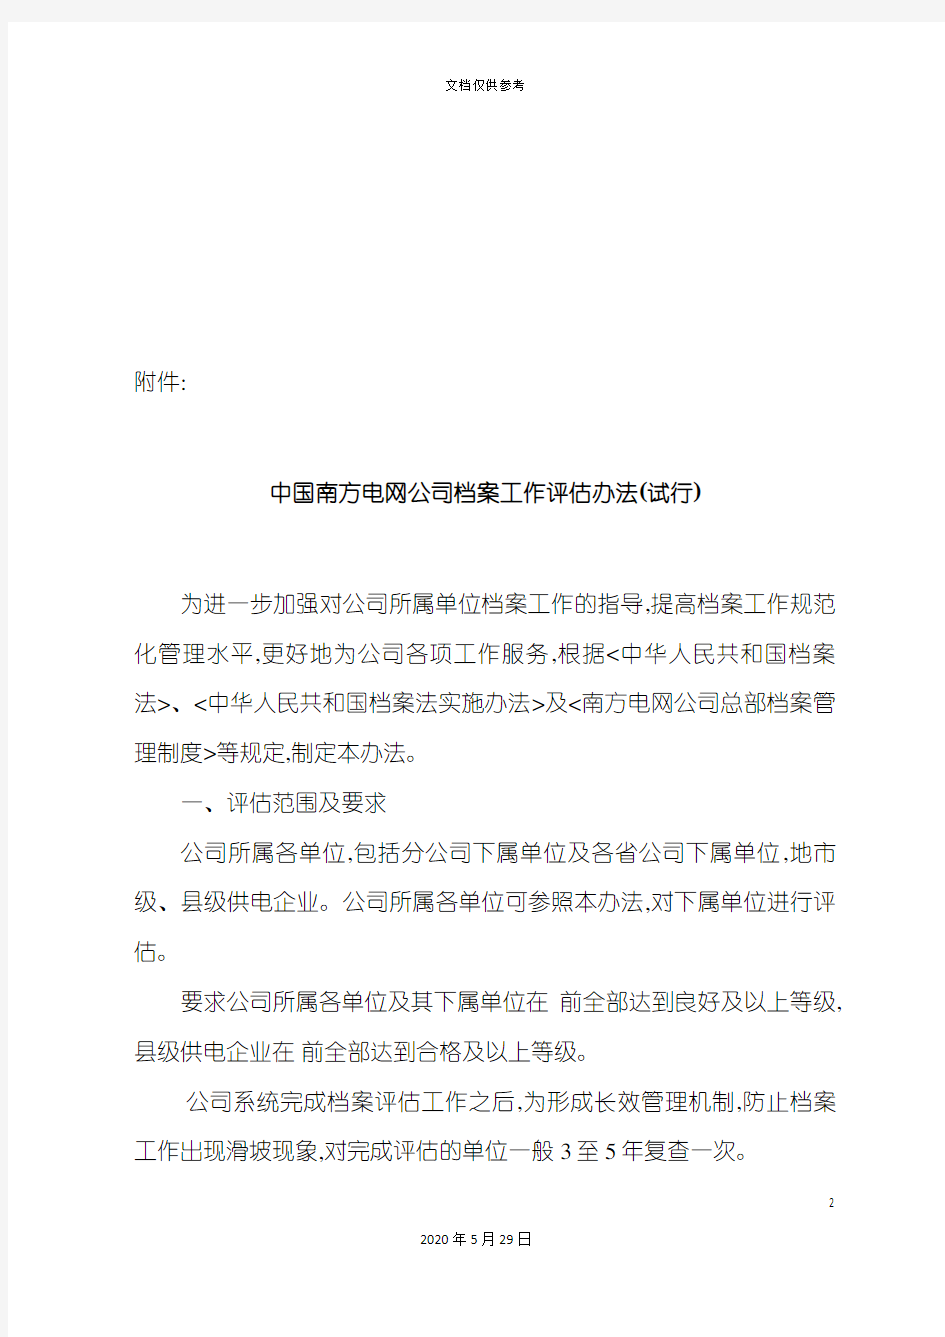 中国南方电网公司档案工作评估制度